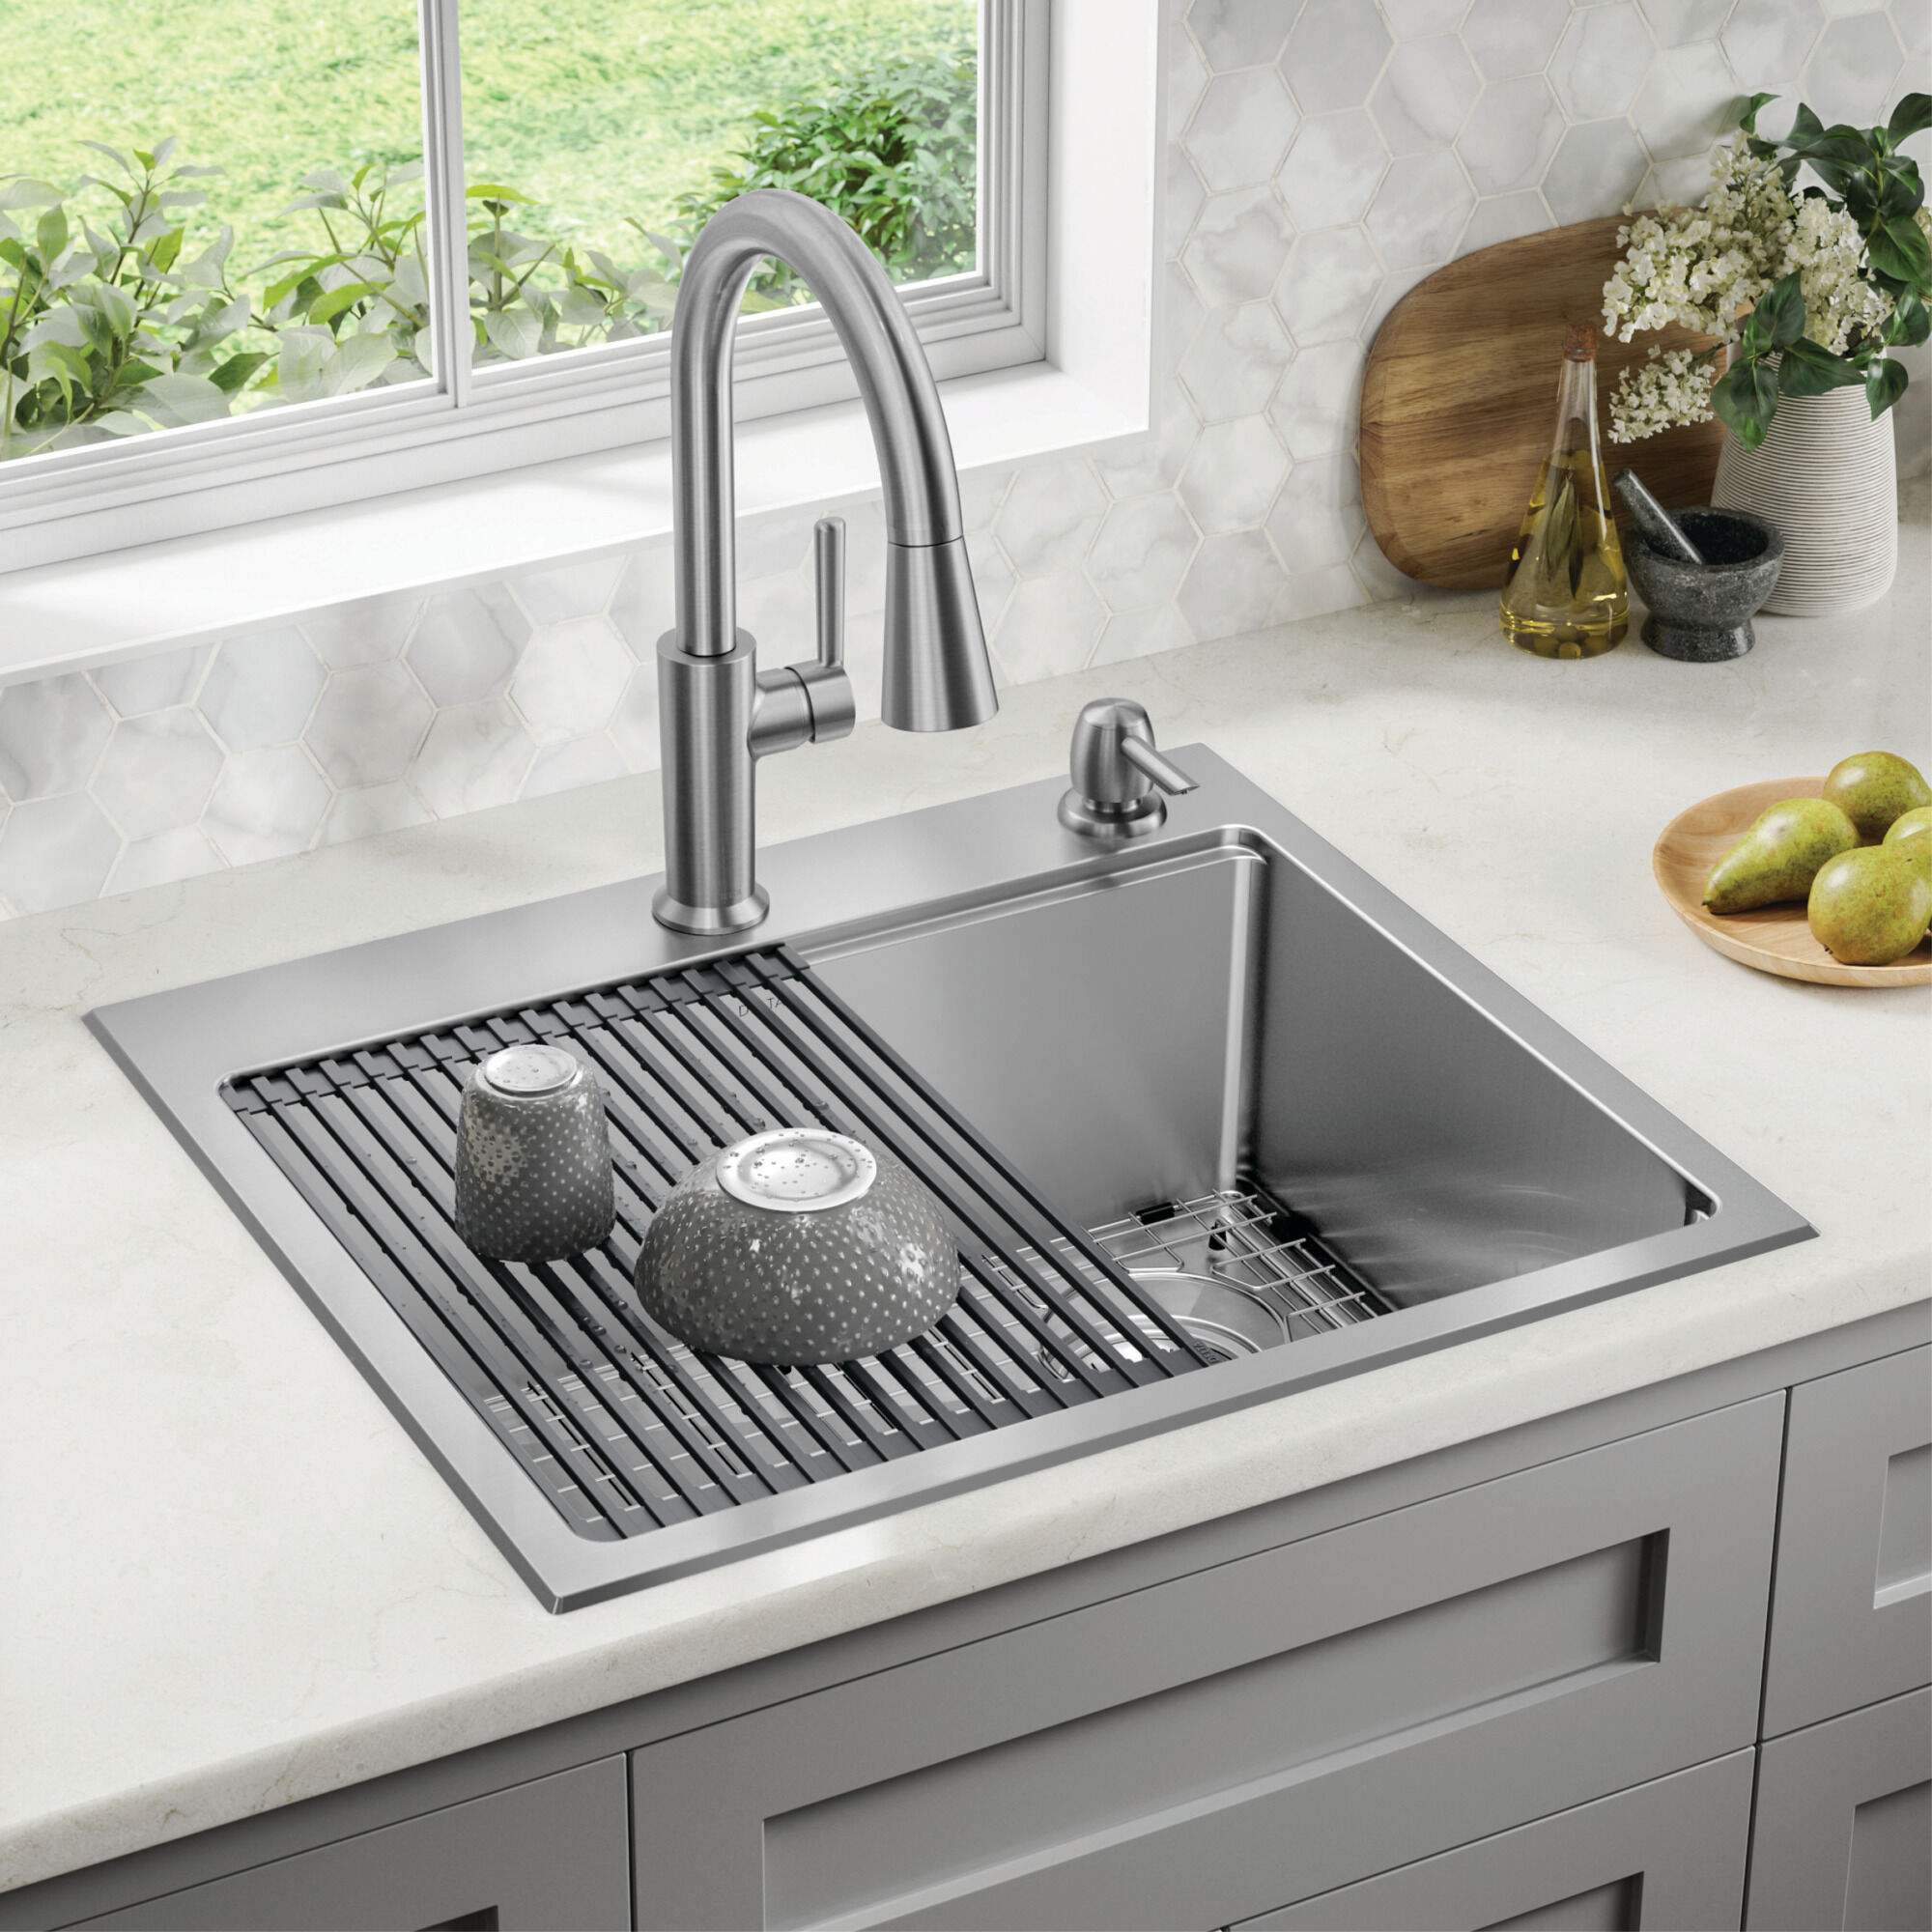 25” Stainless Steel Workstation Kitchen Sink Drop-In Undermount 